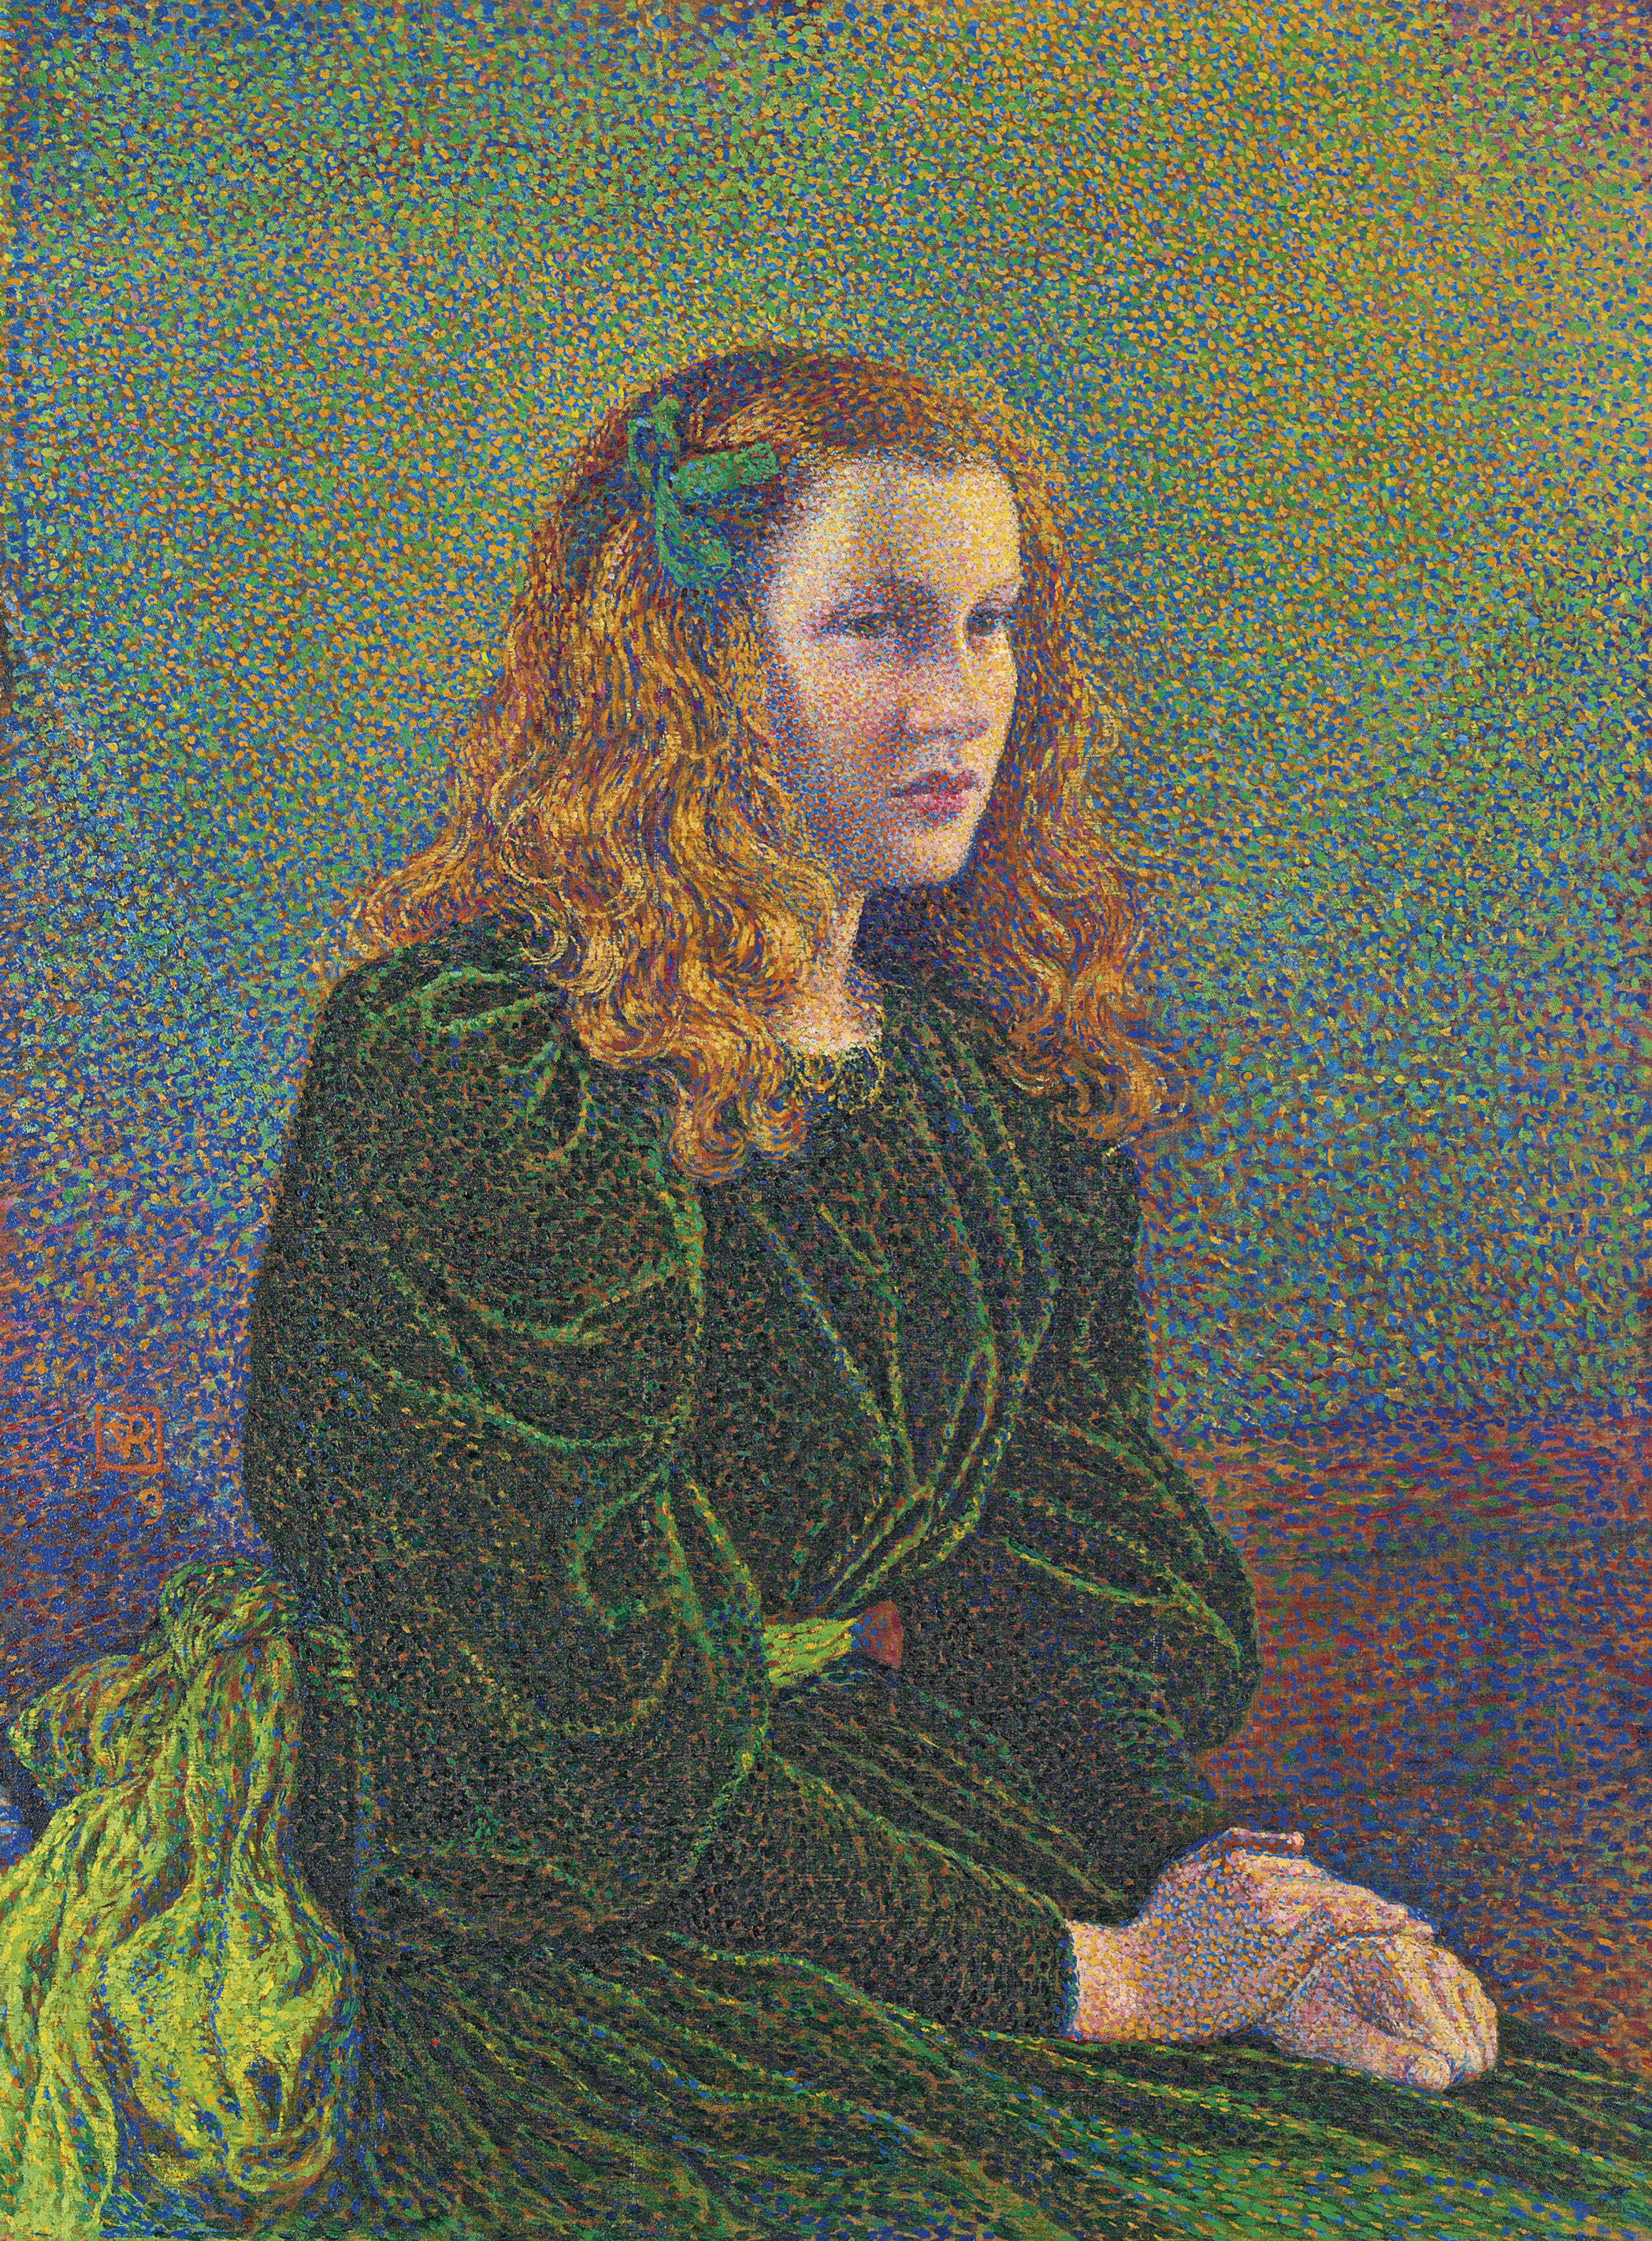 Junge Frau in grünem Kleid (Germaine Maréchal) by Theo van Rysselberghe - 1893 - 81.7 x 60.6 cm Private Sammlung